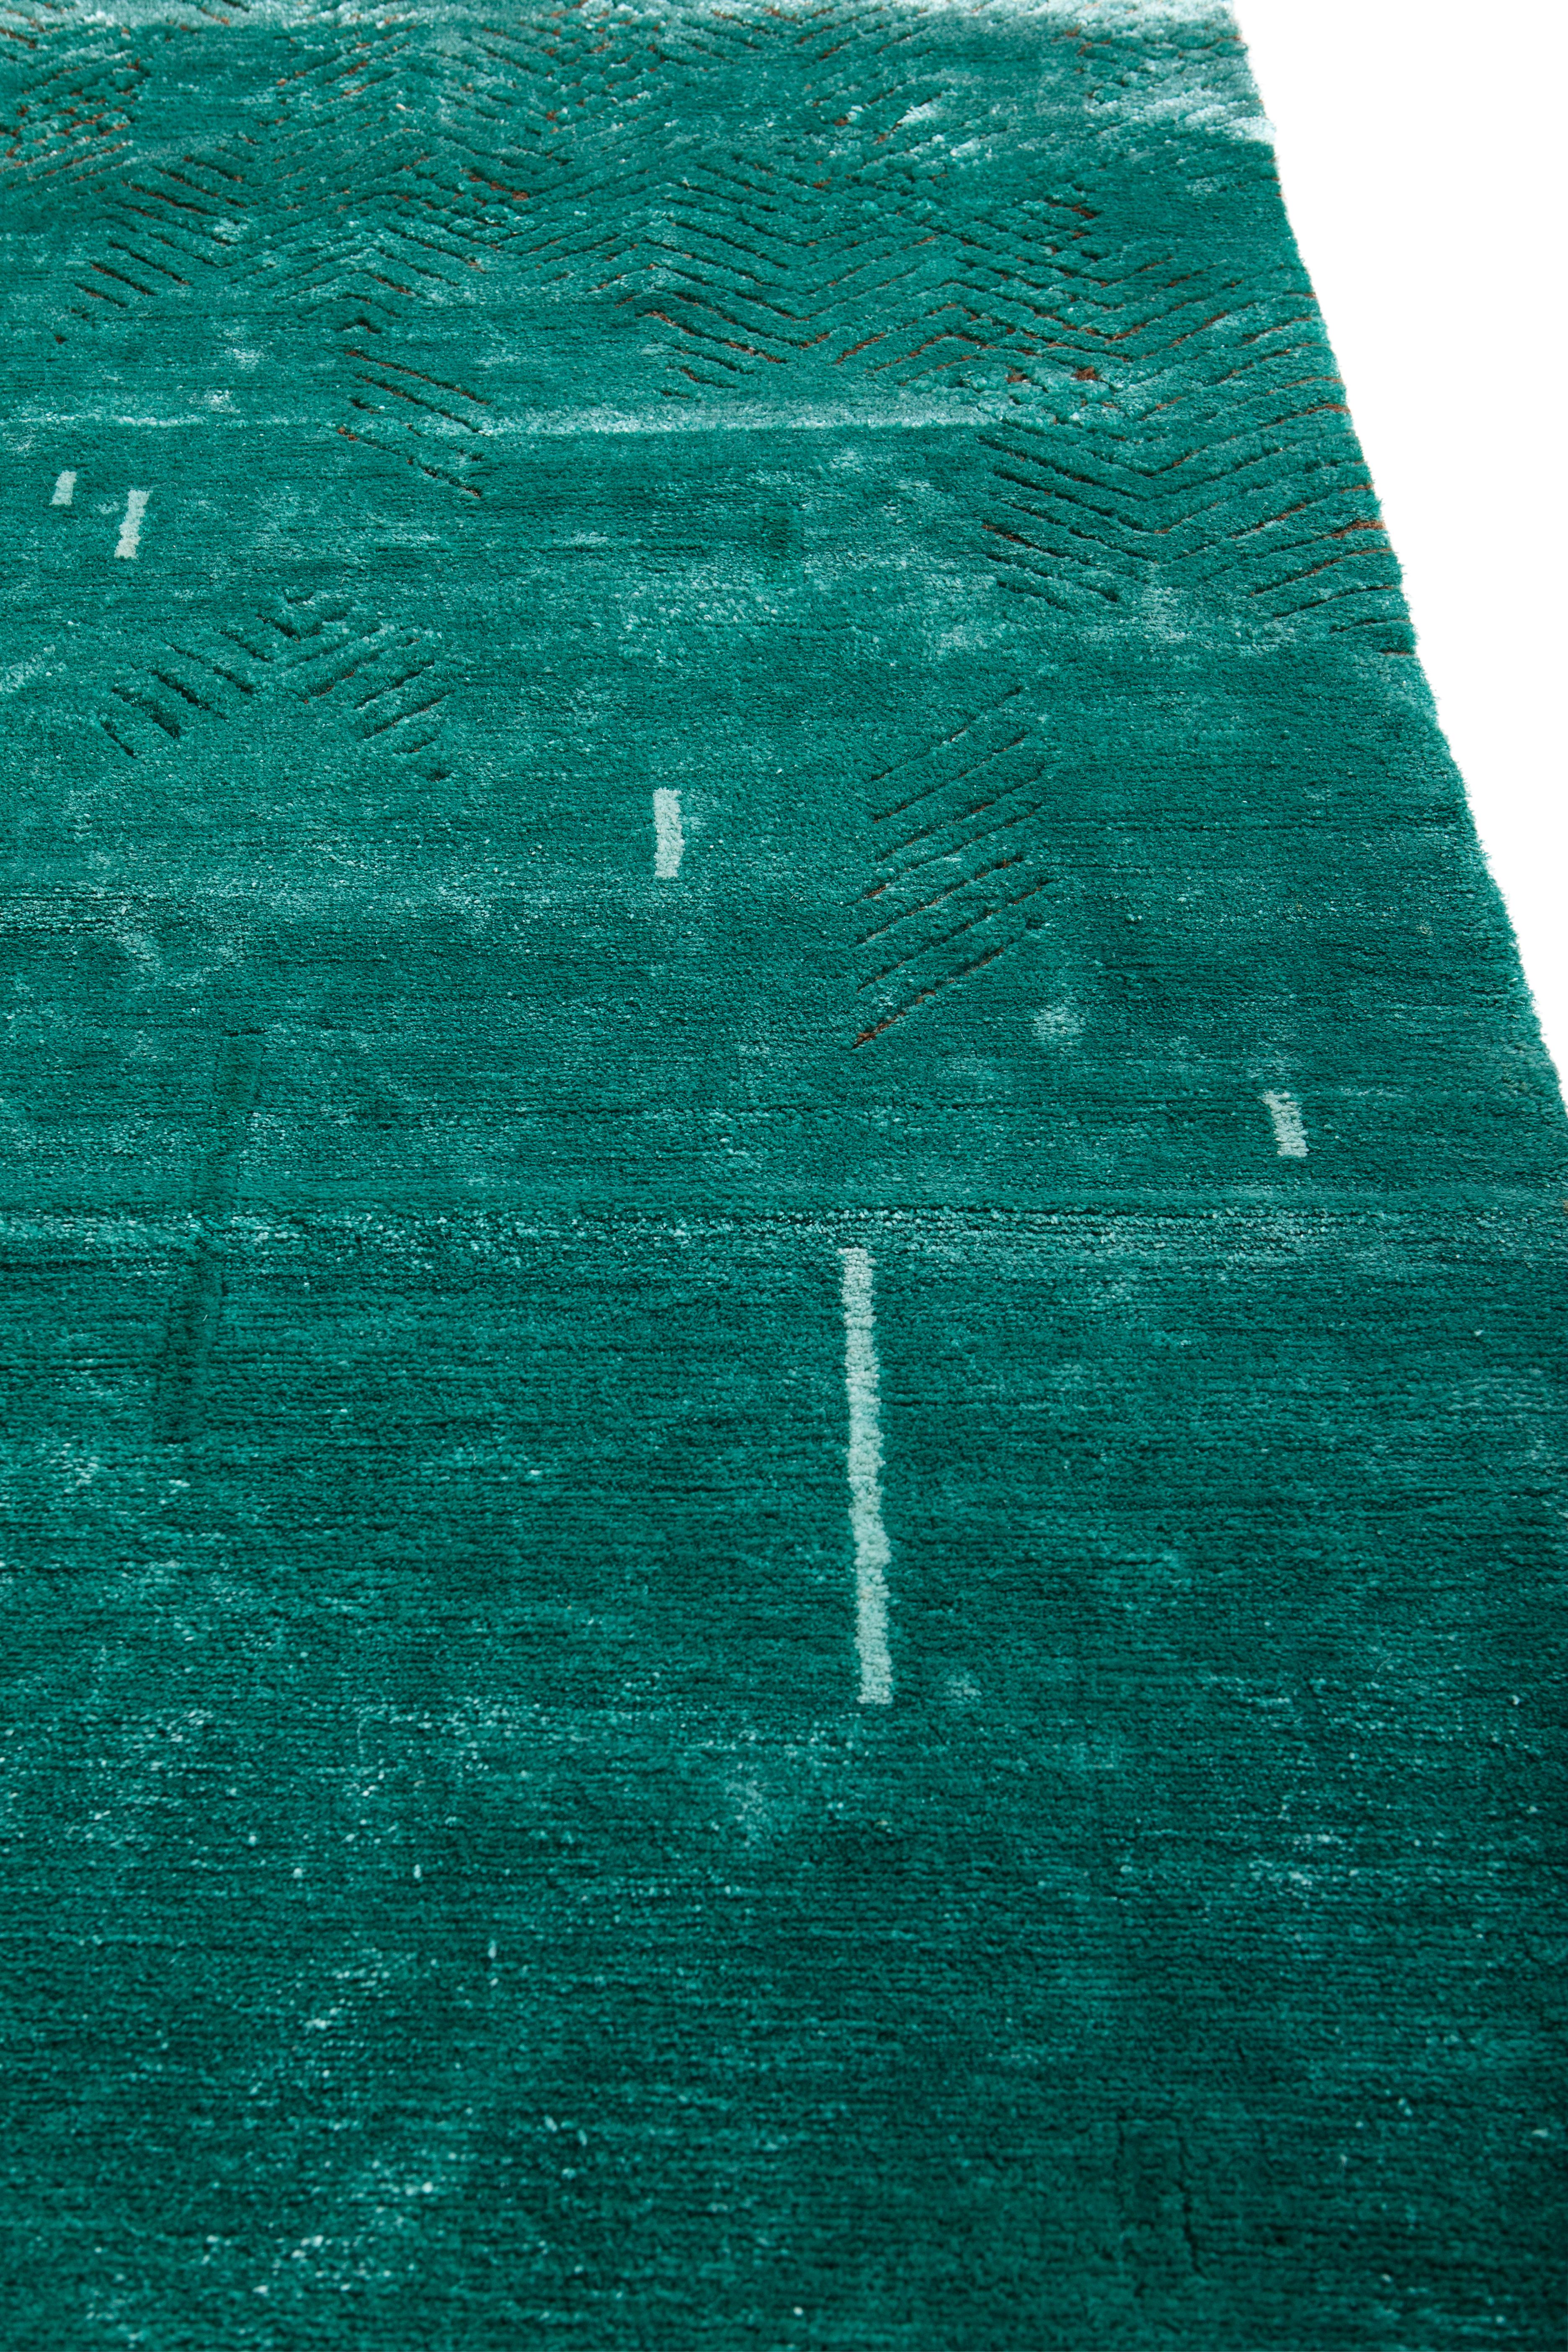 Dieser Teppich ist aus Bananenseide gefertigt. Ein Farbton zwischen Blau und Grün, der durch das Material, das überall in Mexiko zu finden ist, sehr reichhaltig wird: an den Hauswänden, an Zäunen, am Eiswagen, überall. Auf demselben Teppich